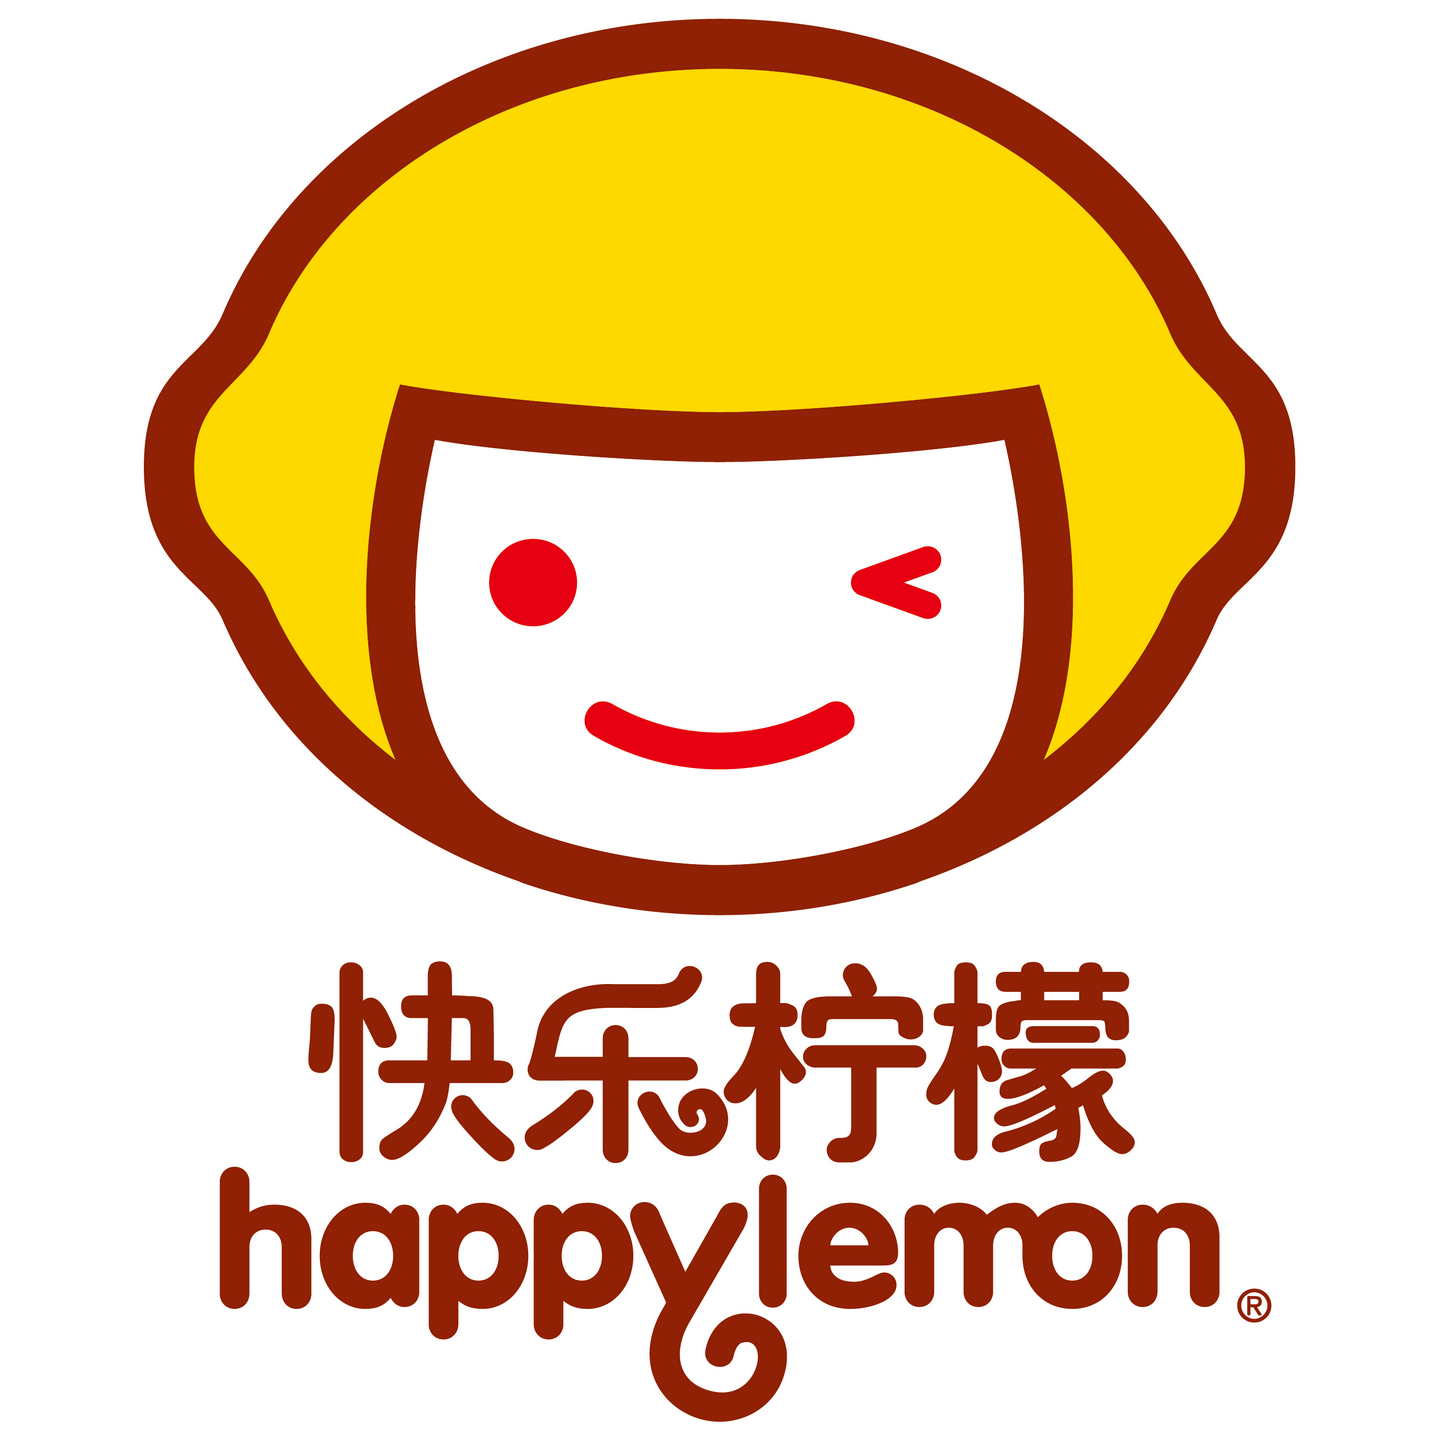 快乐柠檬标志图片